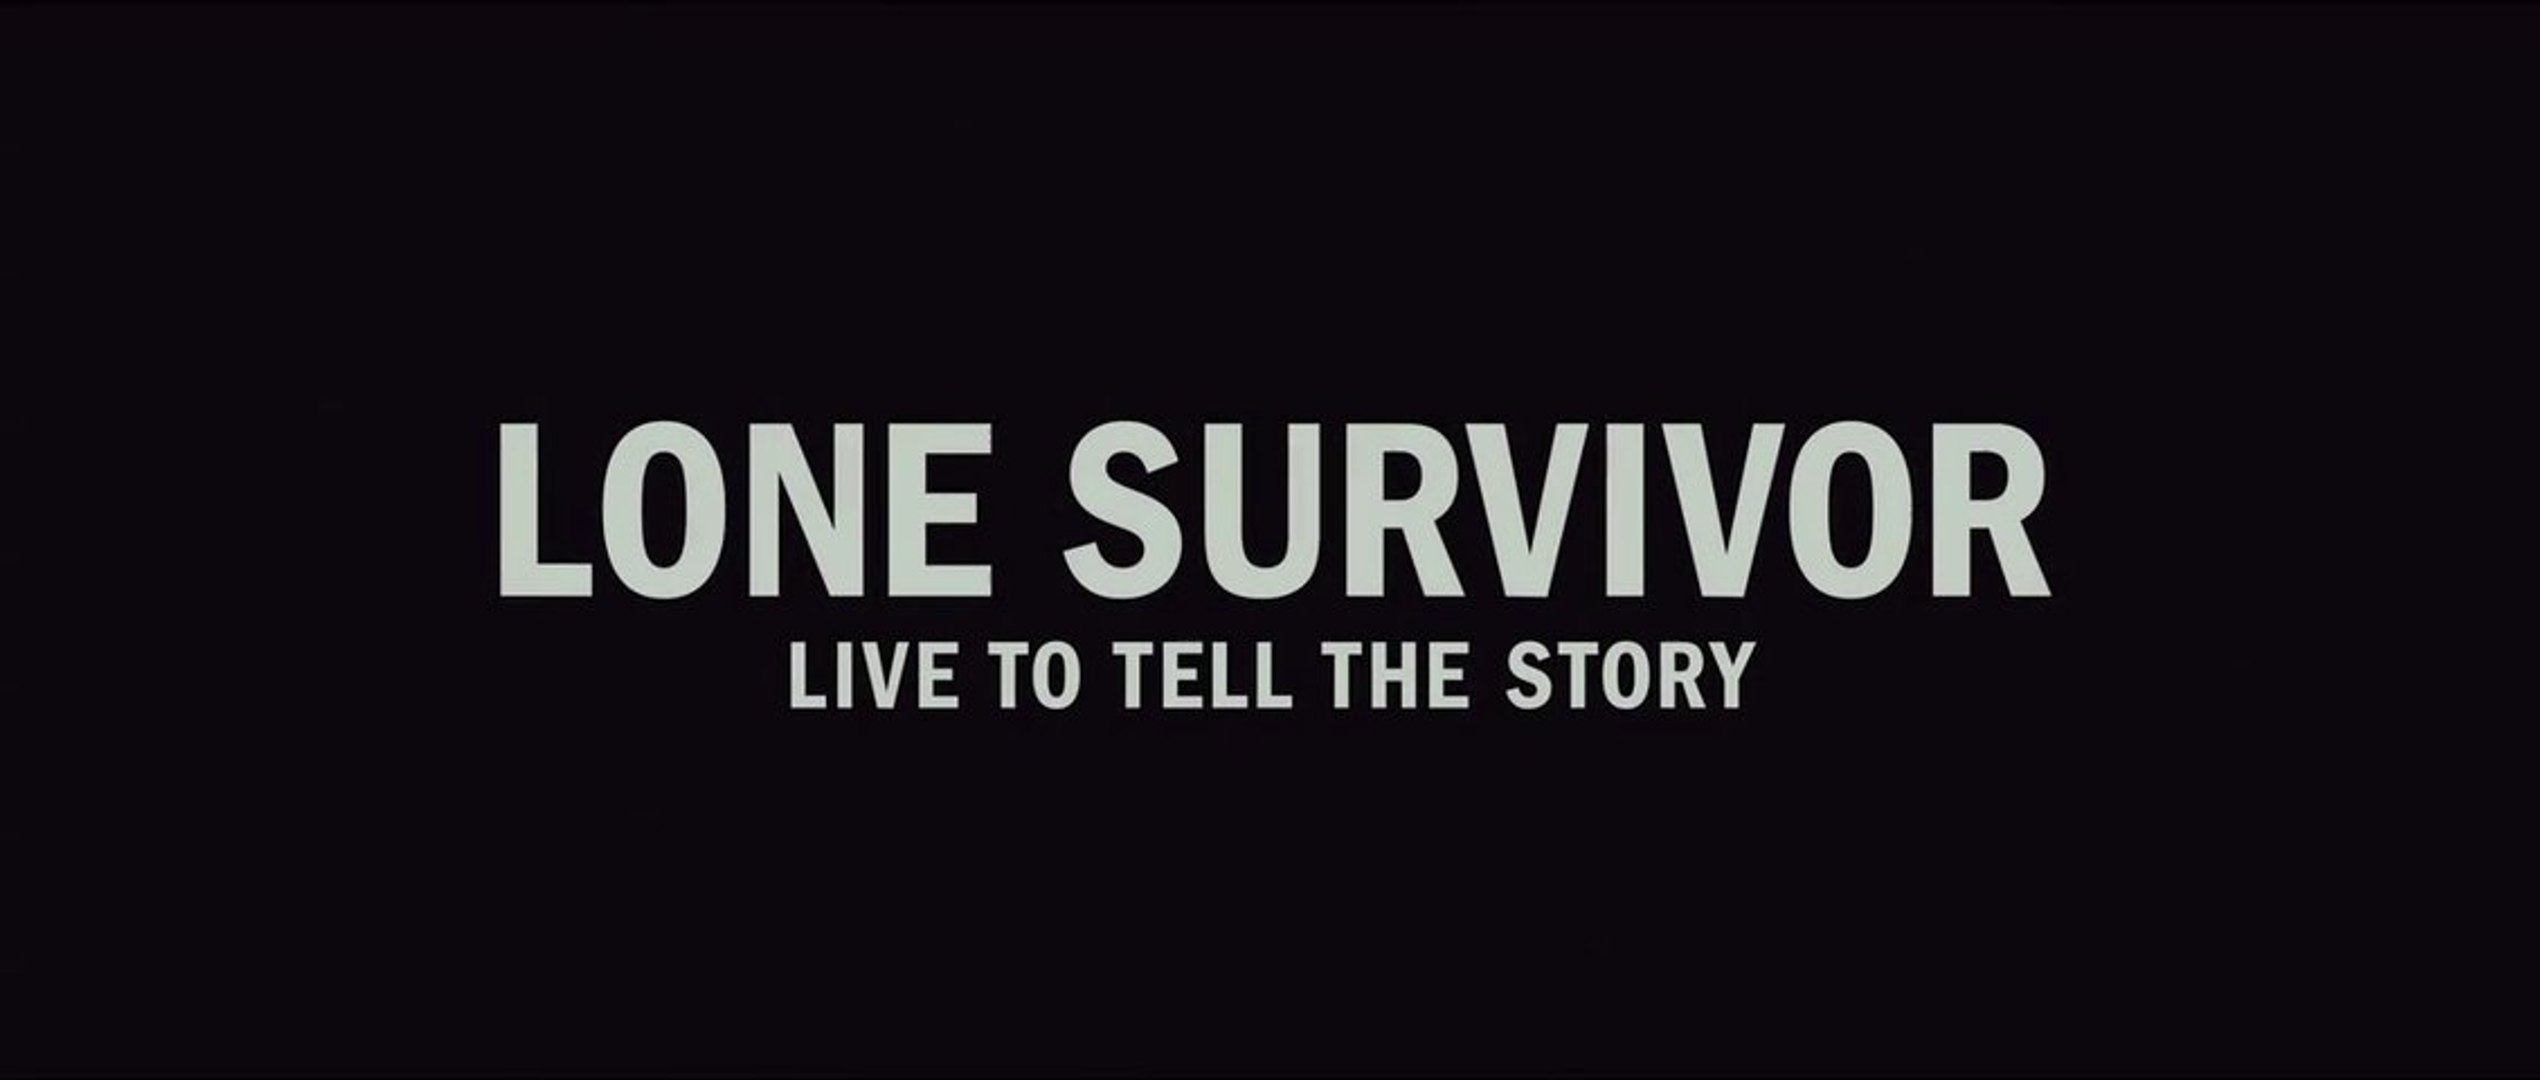 Lone Survivor TRAILER 2 (2013) - Mark Wahlberg Movie HD 